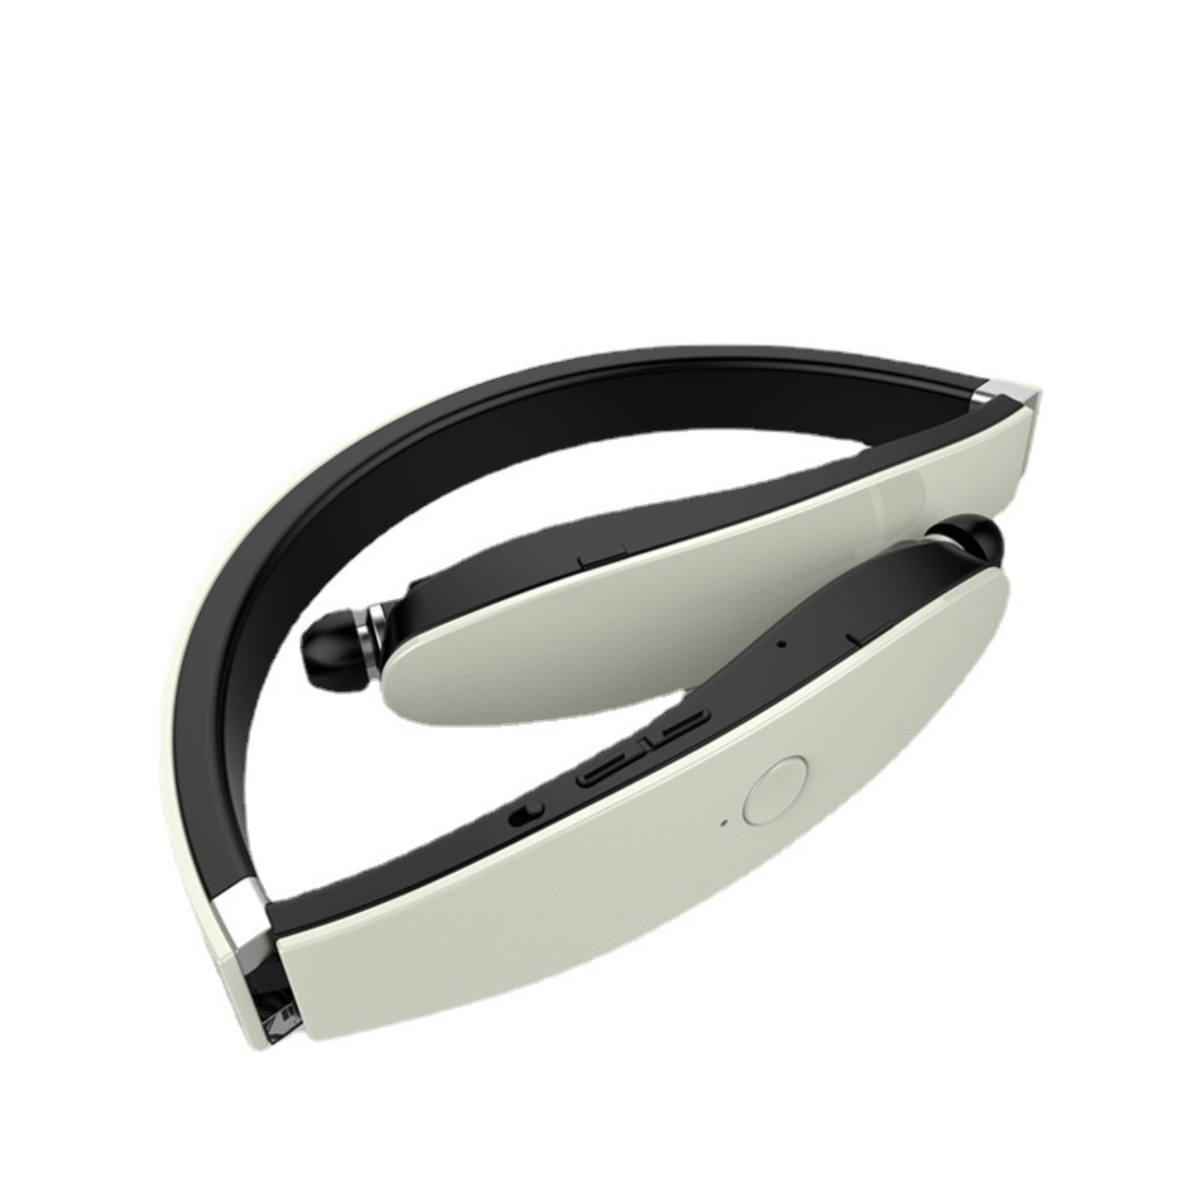 ENBAOXIN Kabelloses Sport-Bluetooth-Headset - Bluetooth zu Schwarz Bluetooth-Kopfhörer und faltbar In-ear In-Ear-Hals, verstauen, leicht